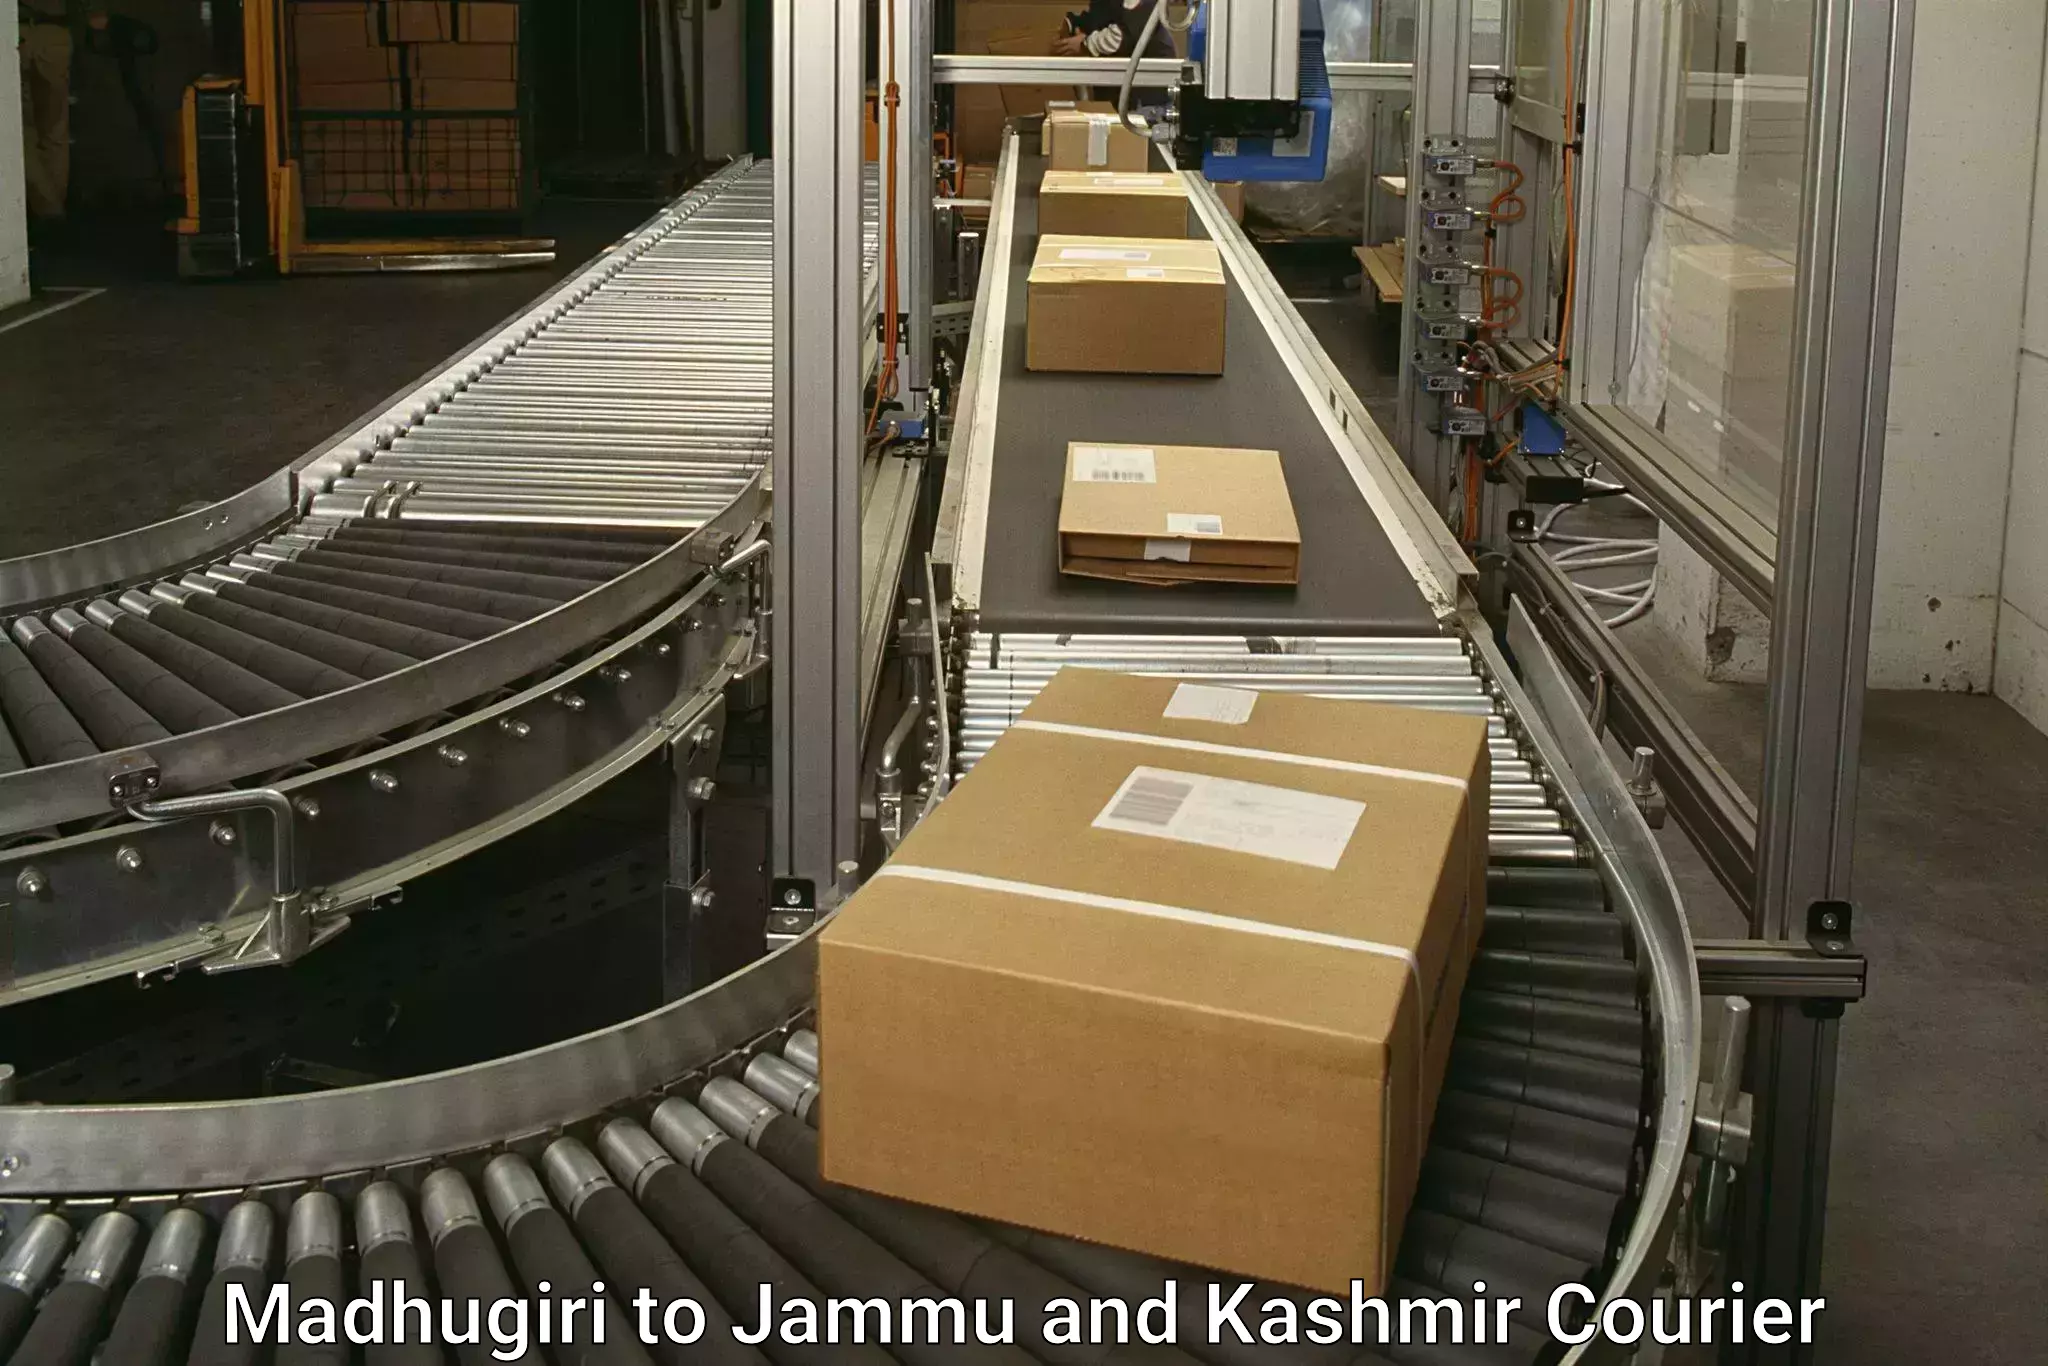 Next-generation courier services Madhugiri to Jammu